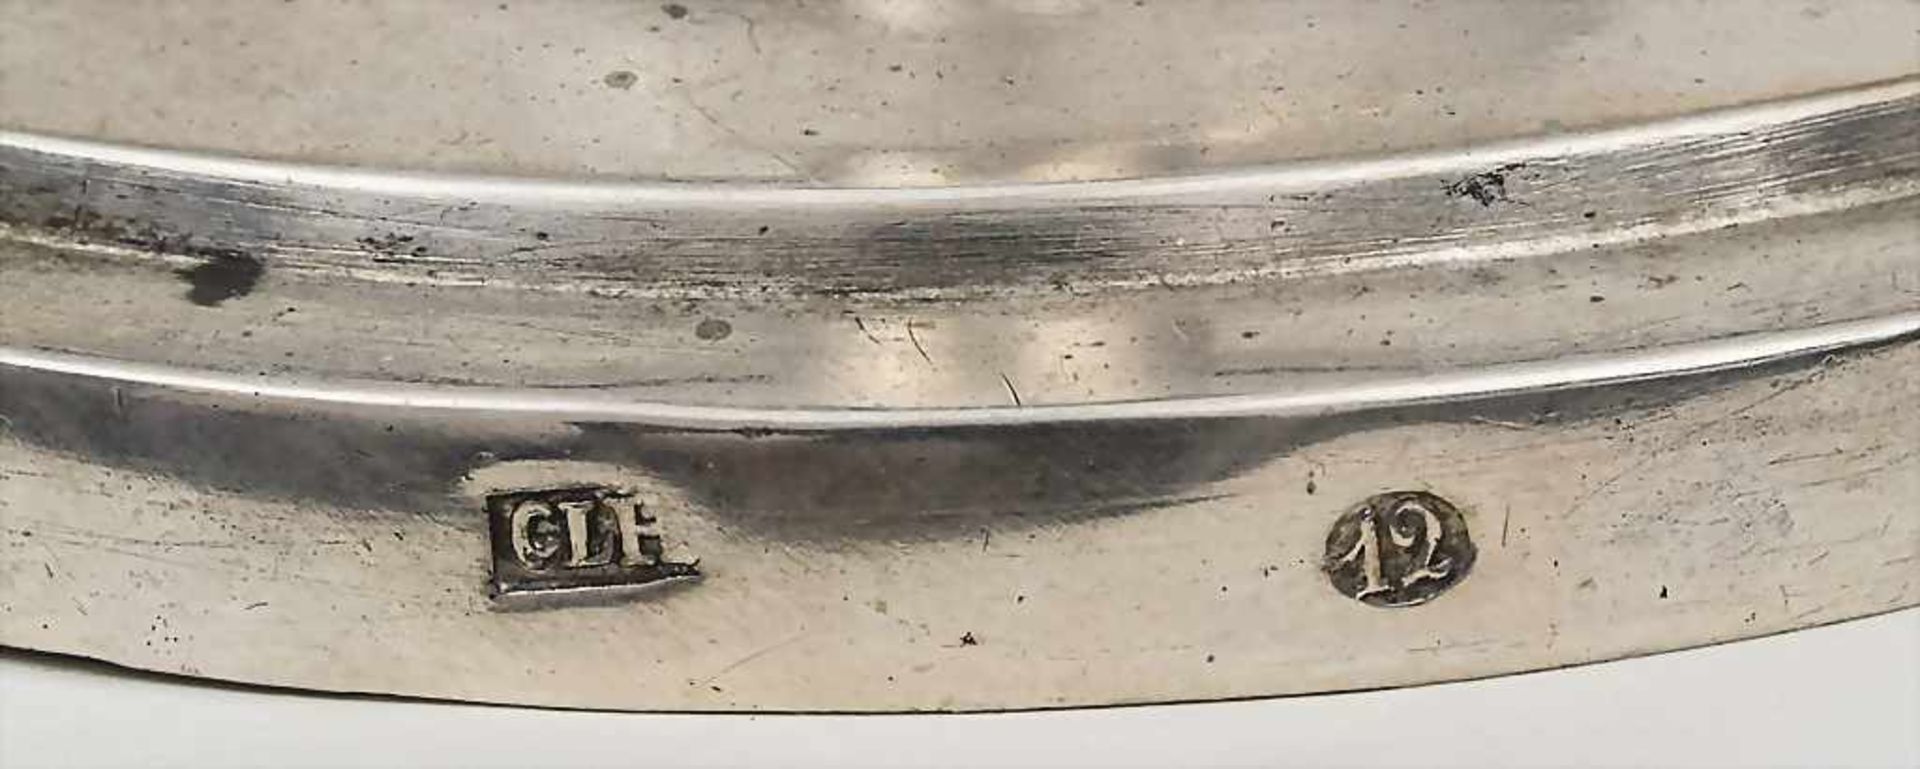 Empire Leuchter / Candle Stick, um 1820Material: Silber 12 Lot,Punzierung: 12, Meisterpunze CLH, - Image 2 of 2